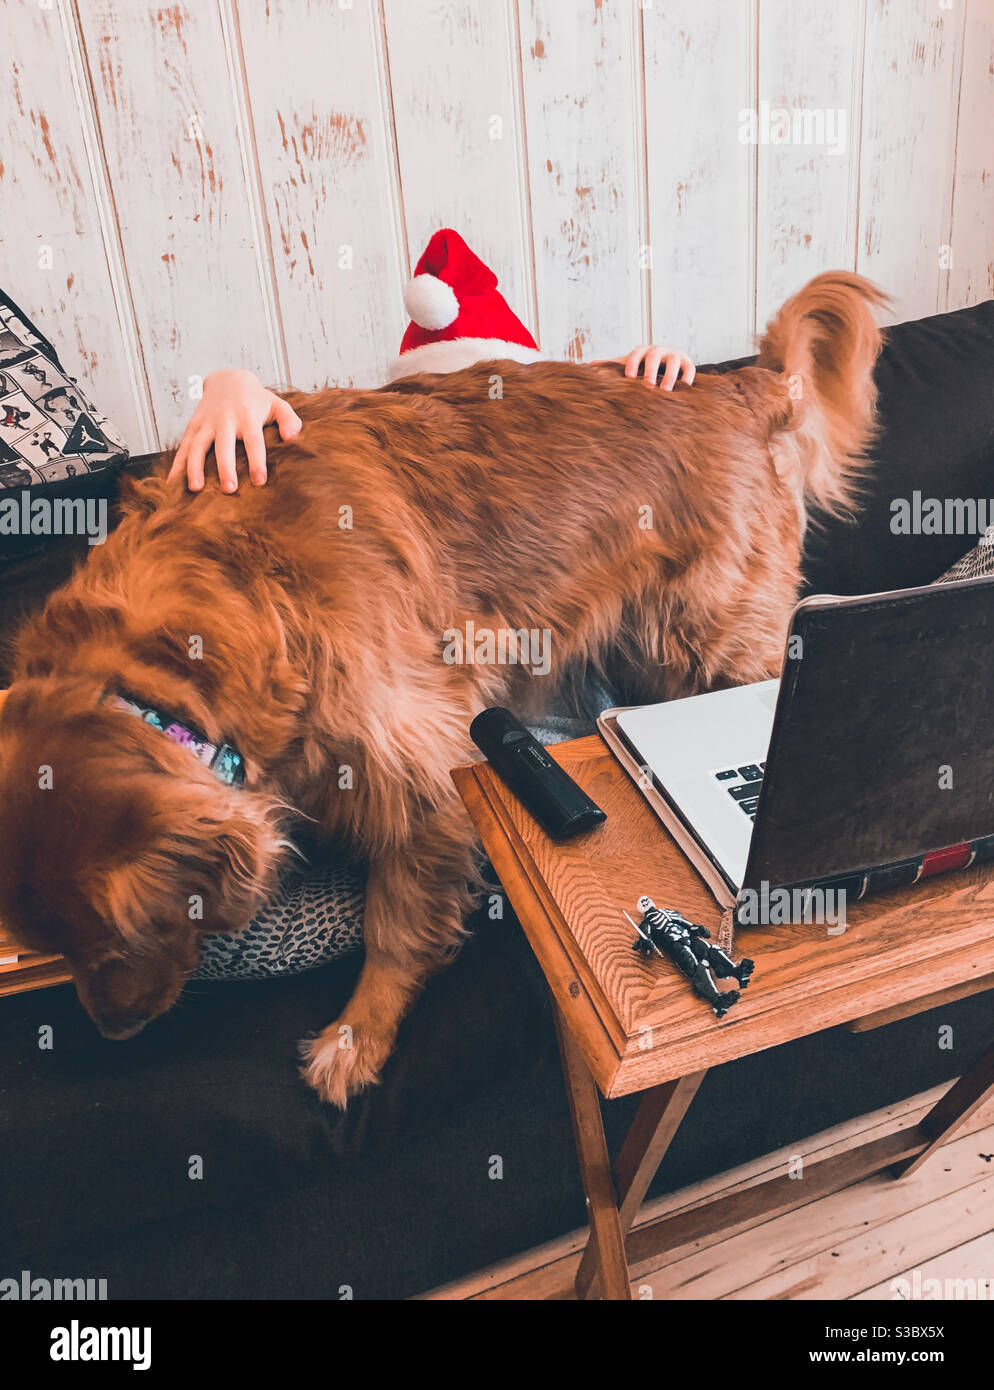 Ein goldener Retriever-Hund unterbricht eine Videoklasse. Die Hände des Studenten und der Weihnachtsmütze sind alles, was hinter dem Hund sichtbar ist. Stockfoto